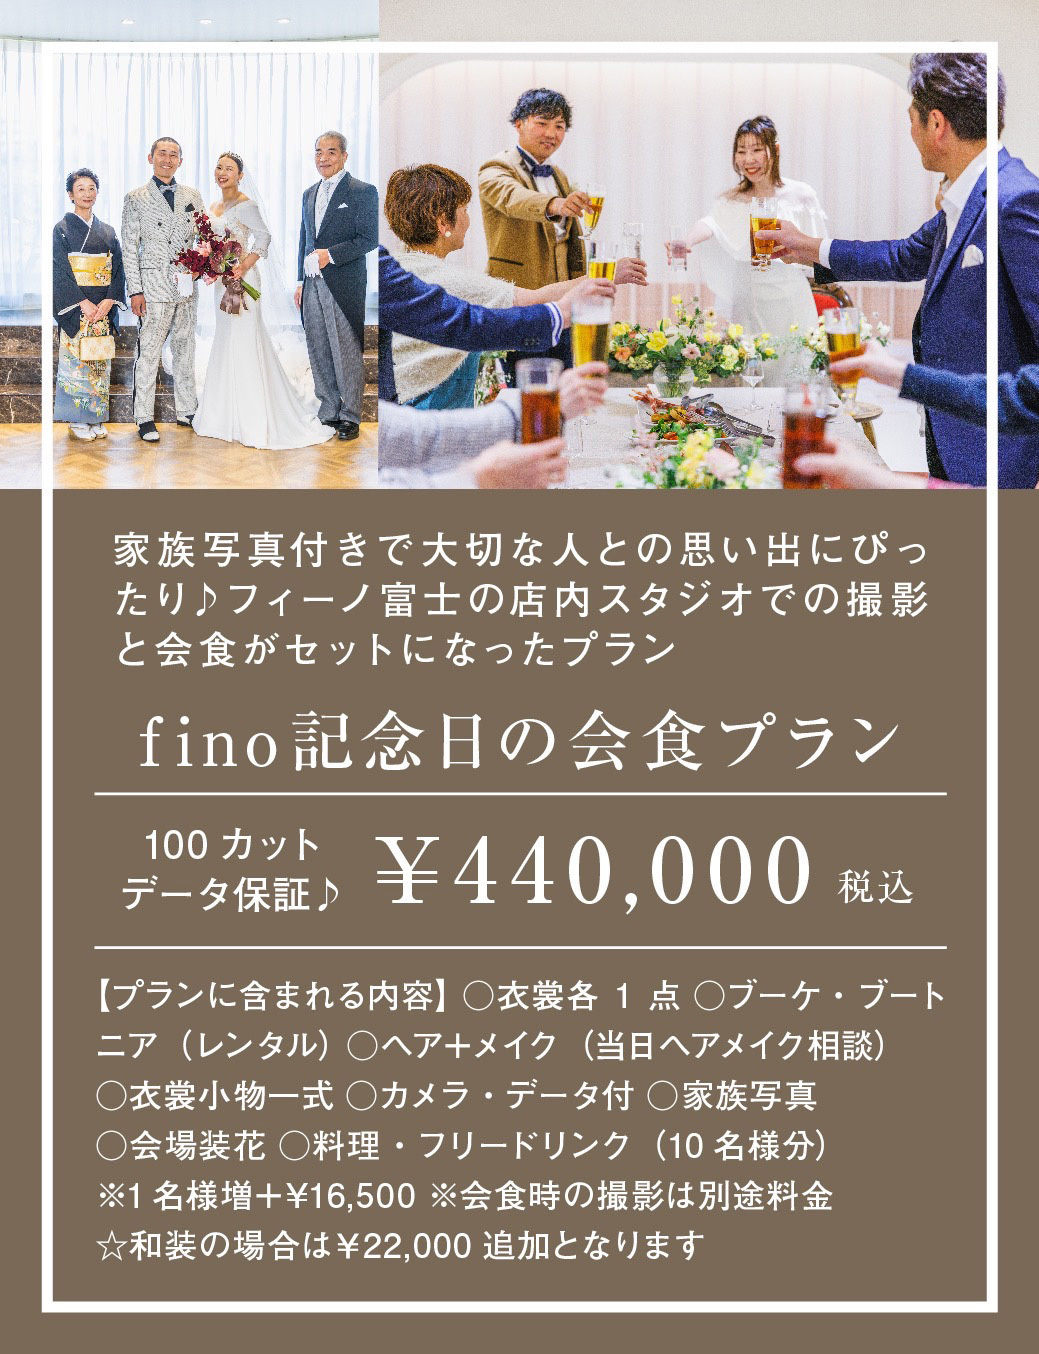 富士市フィーノ記念日の会食プラン